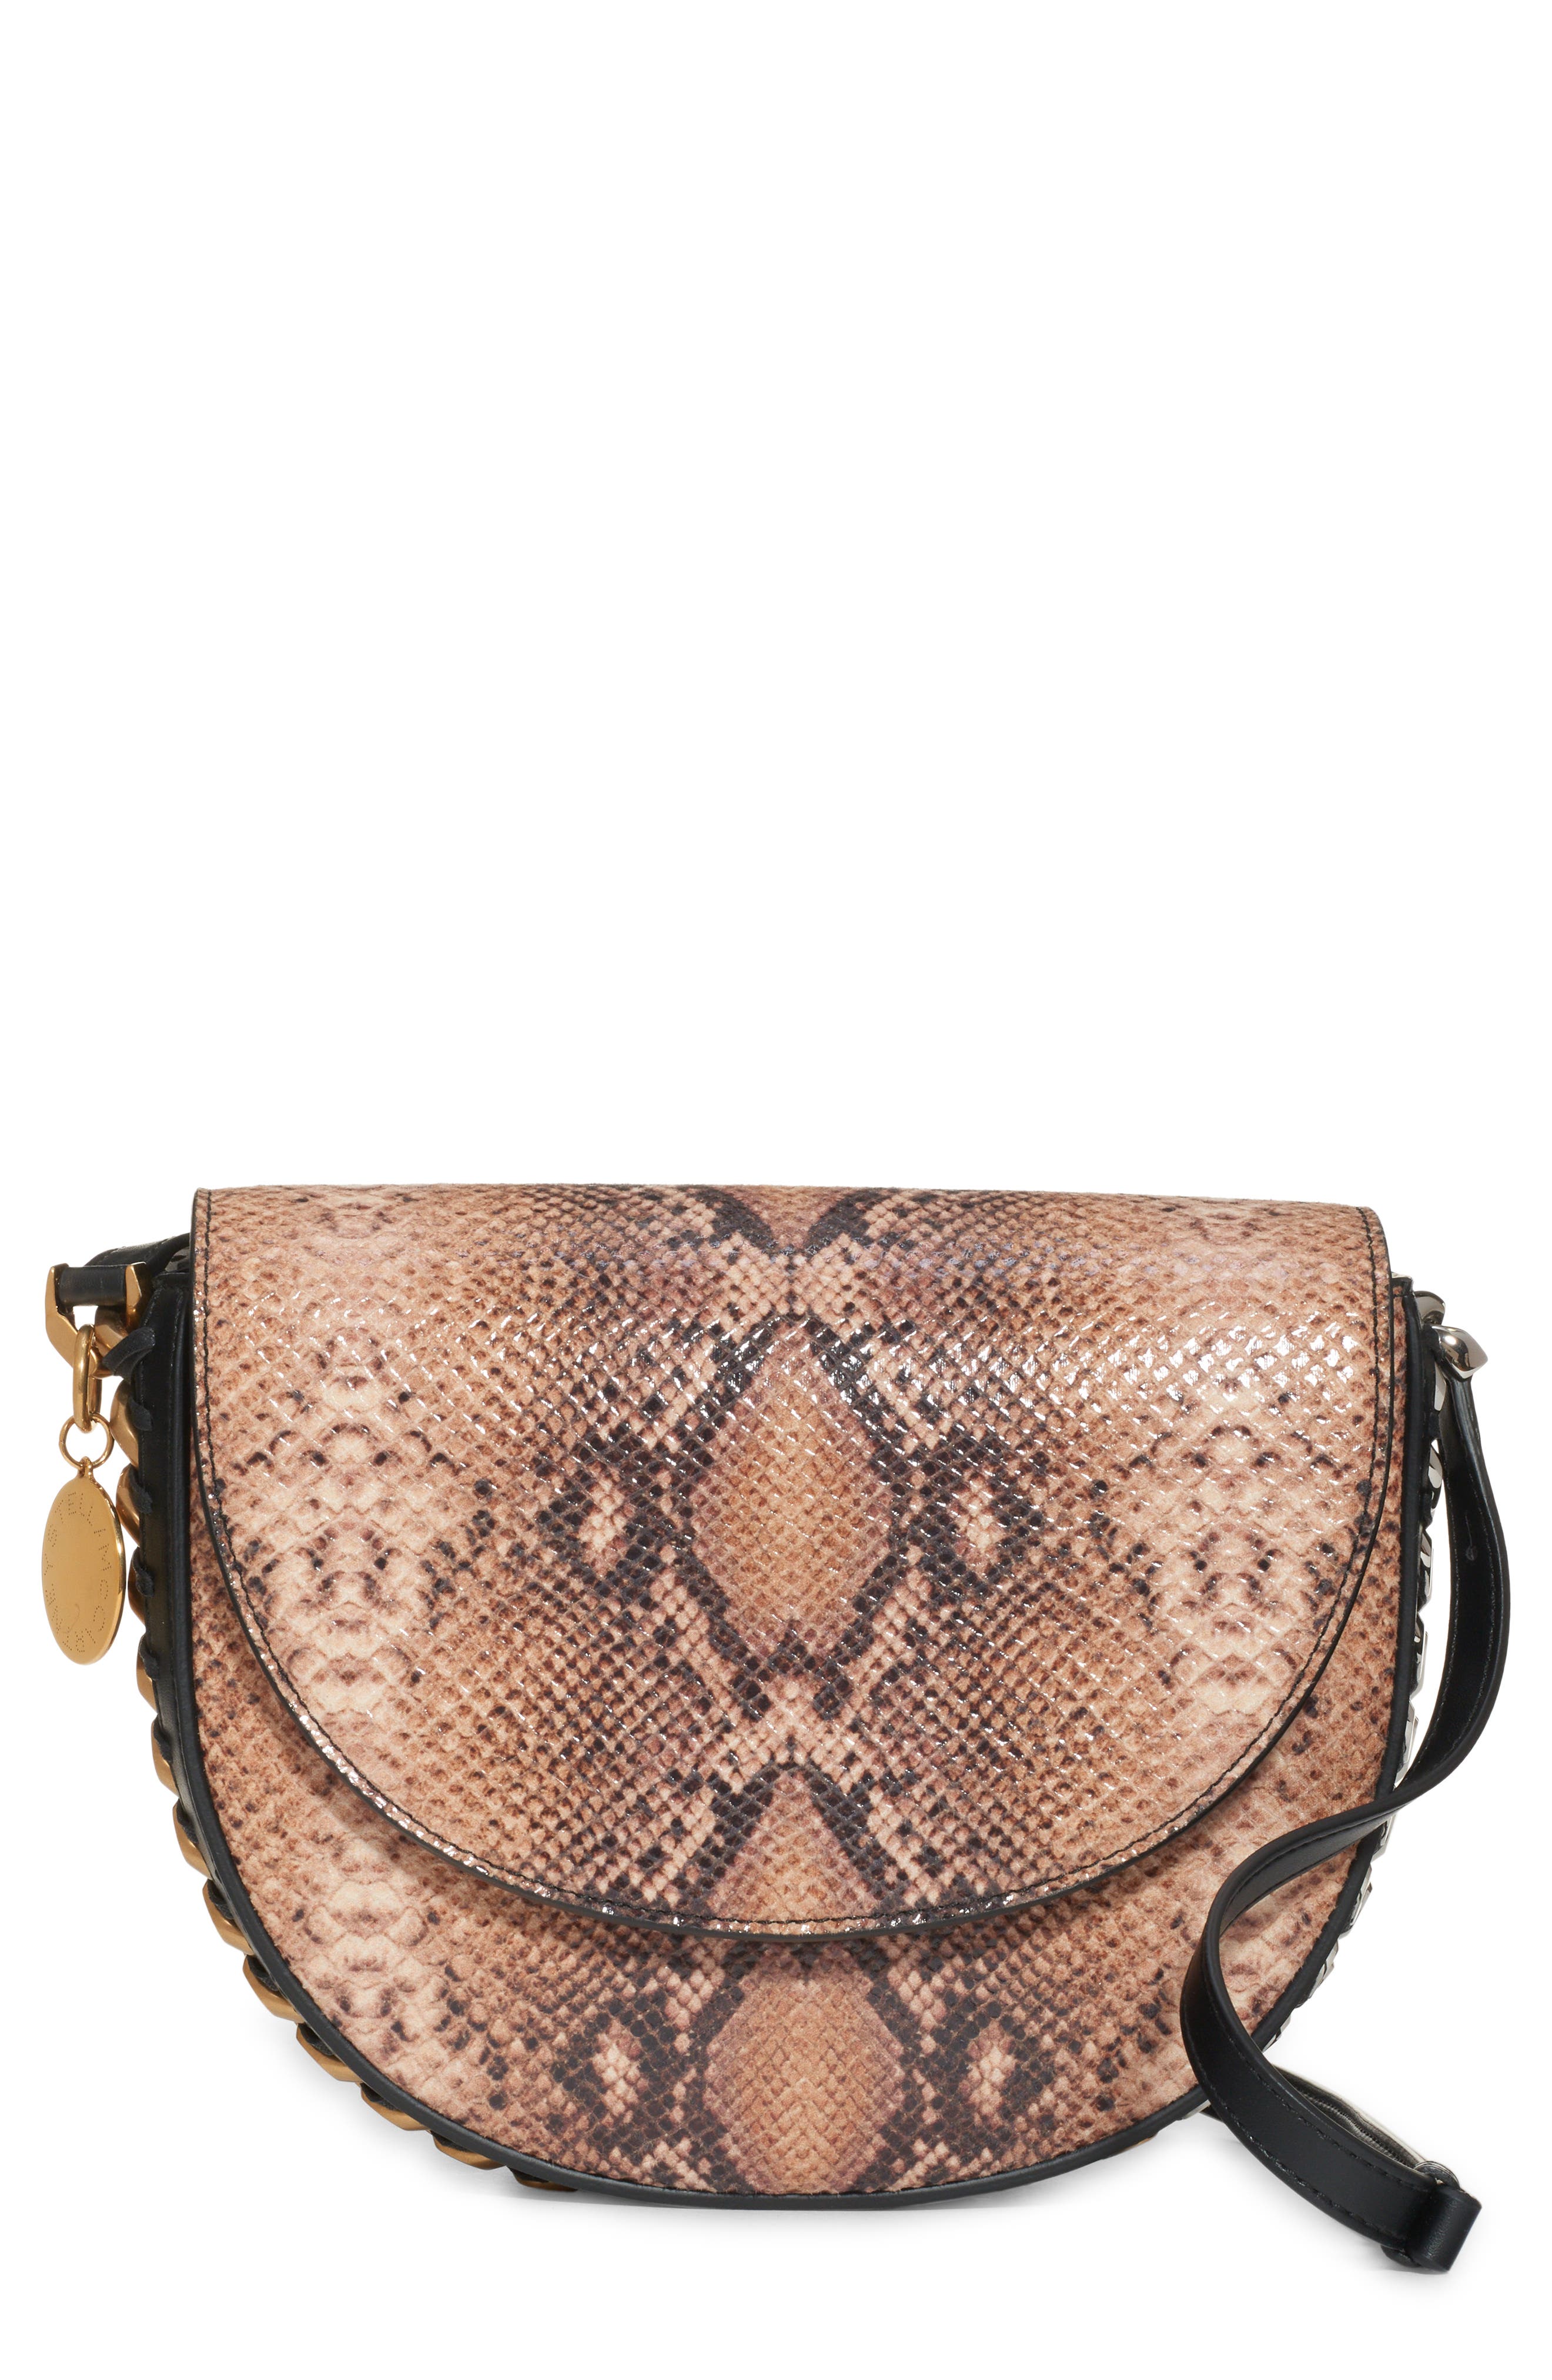 Stella McCartney Medium Frayme Flap Faux Leather Snakeskin Print Shoulder Bag in 9500 - Natural